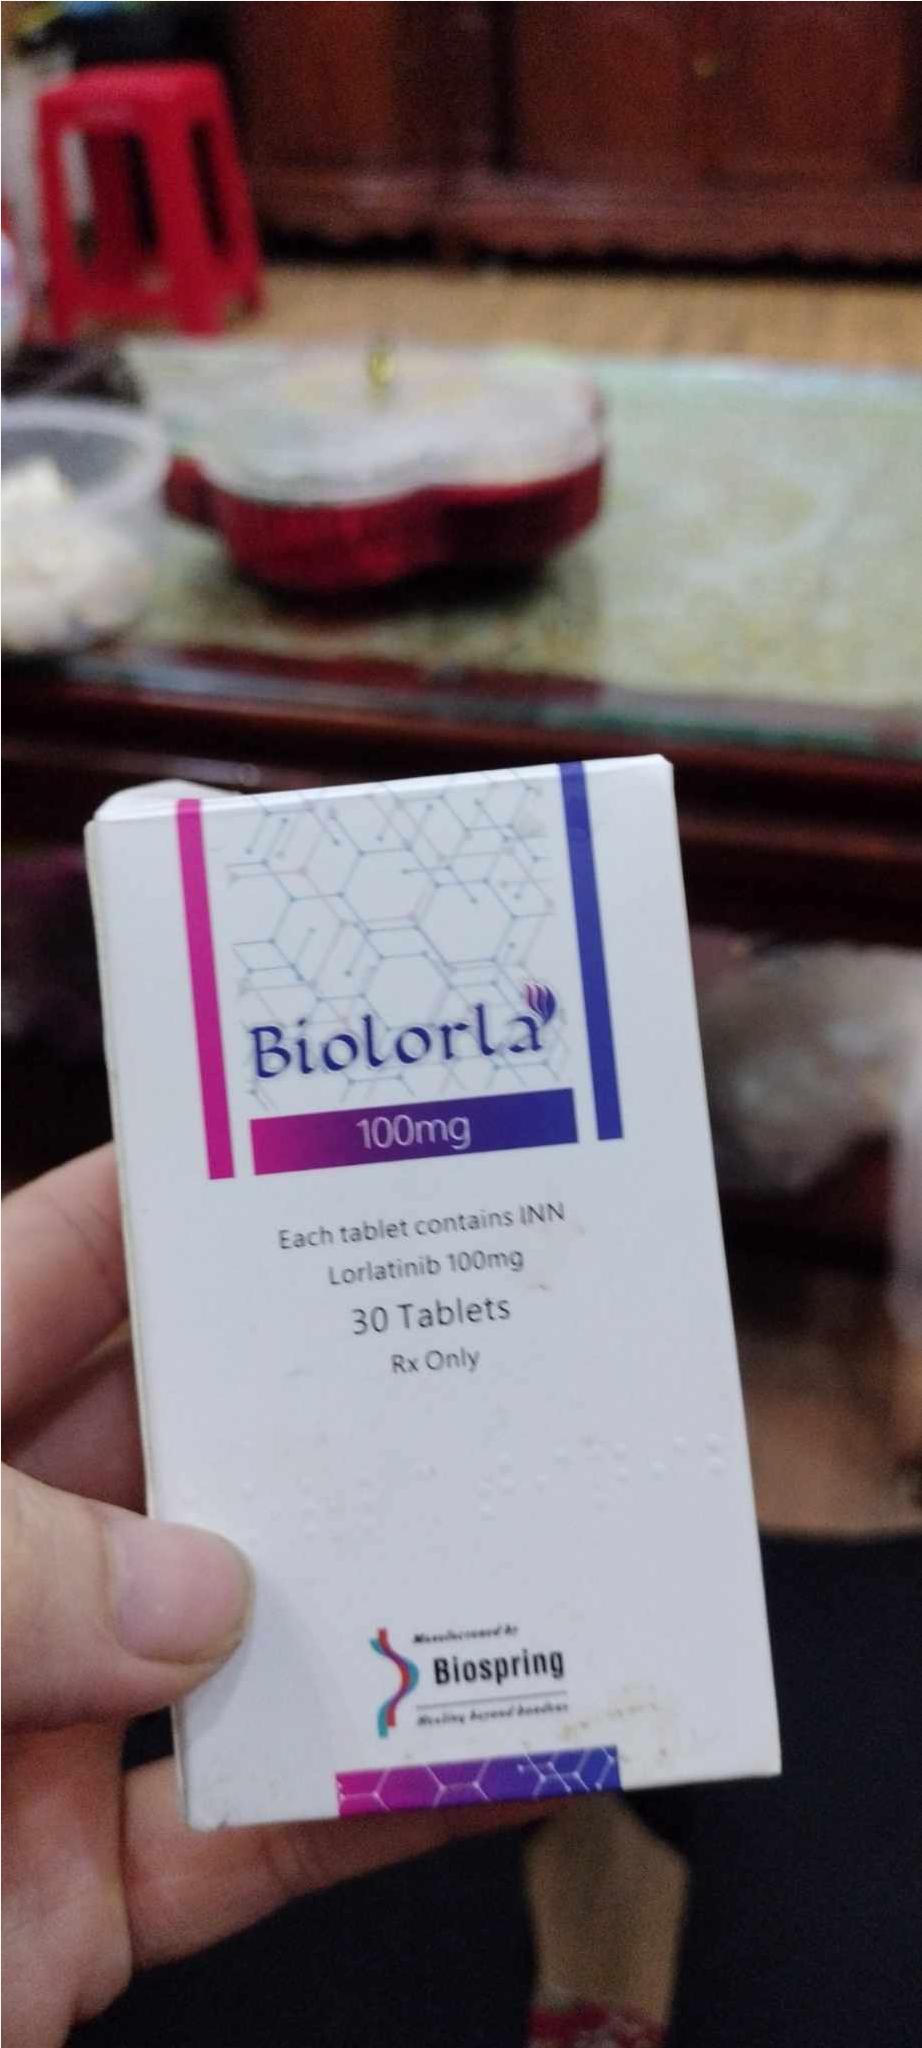 Thuốc Biolorla Lorlatinib 100mg giá bao nhiêu mua ở đâu